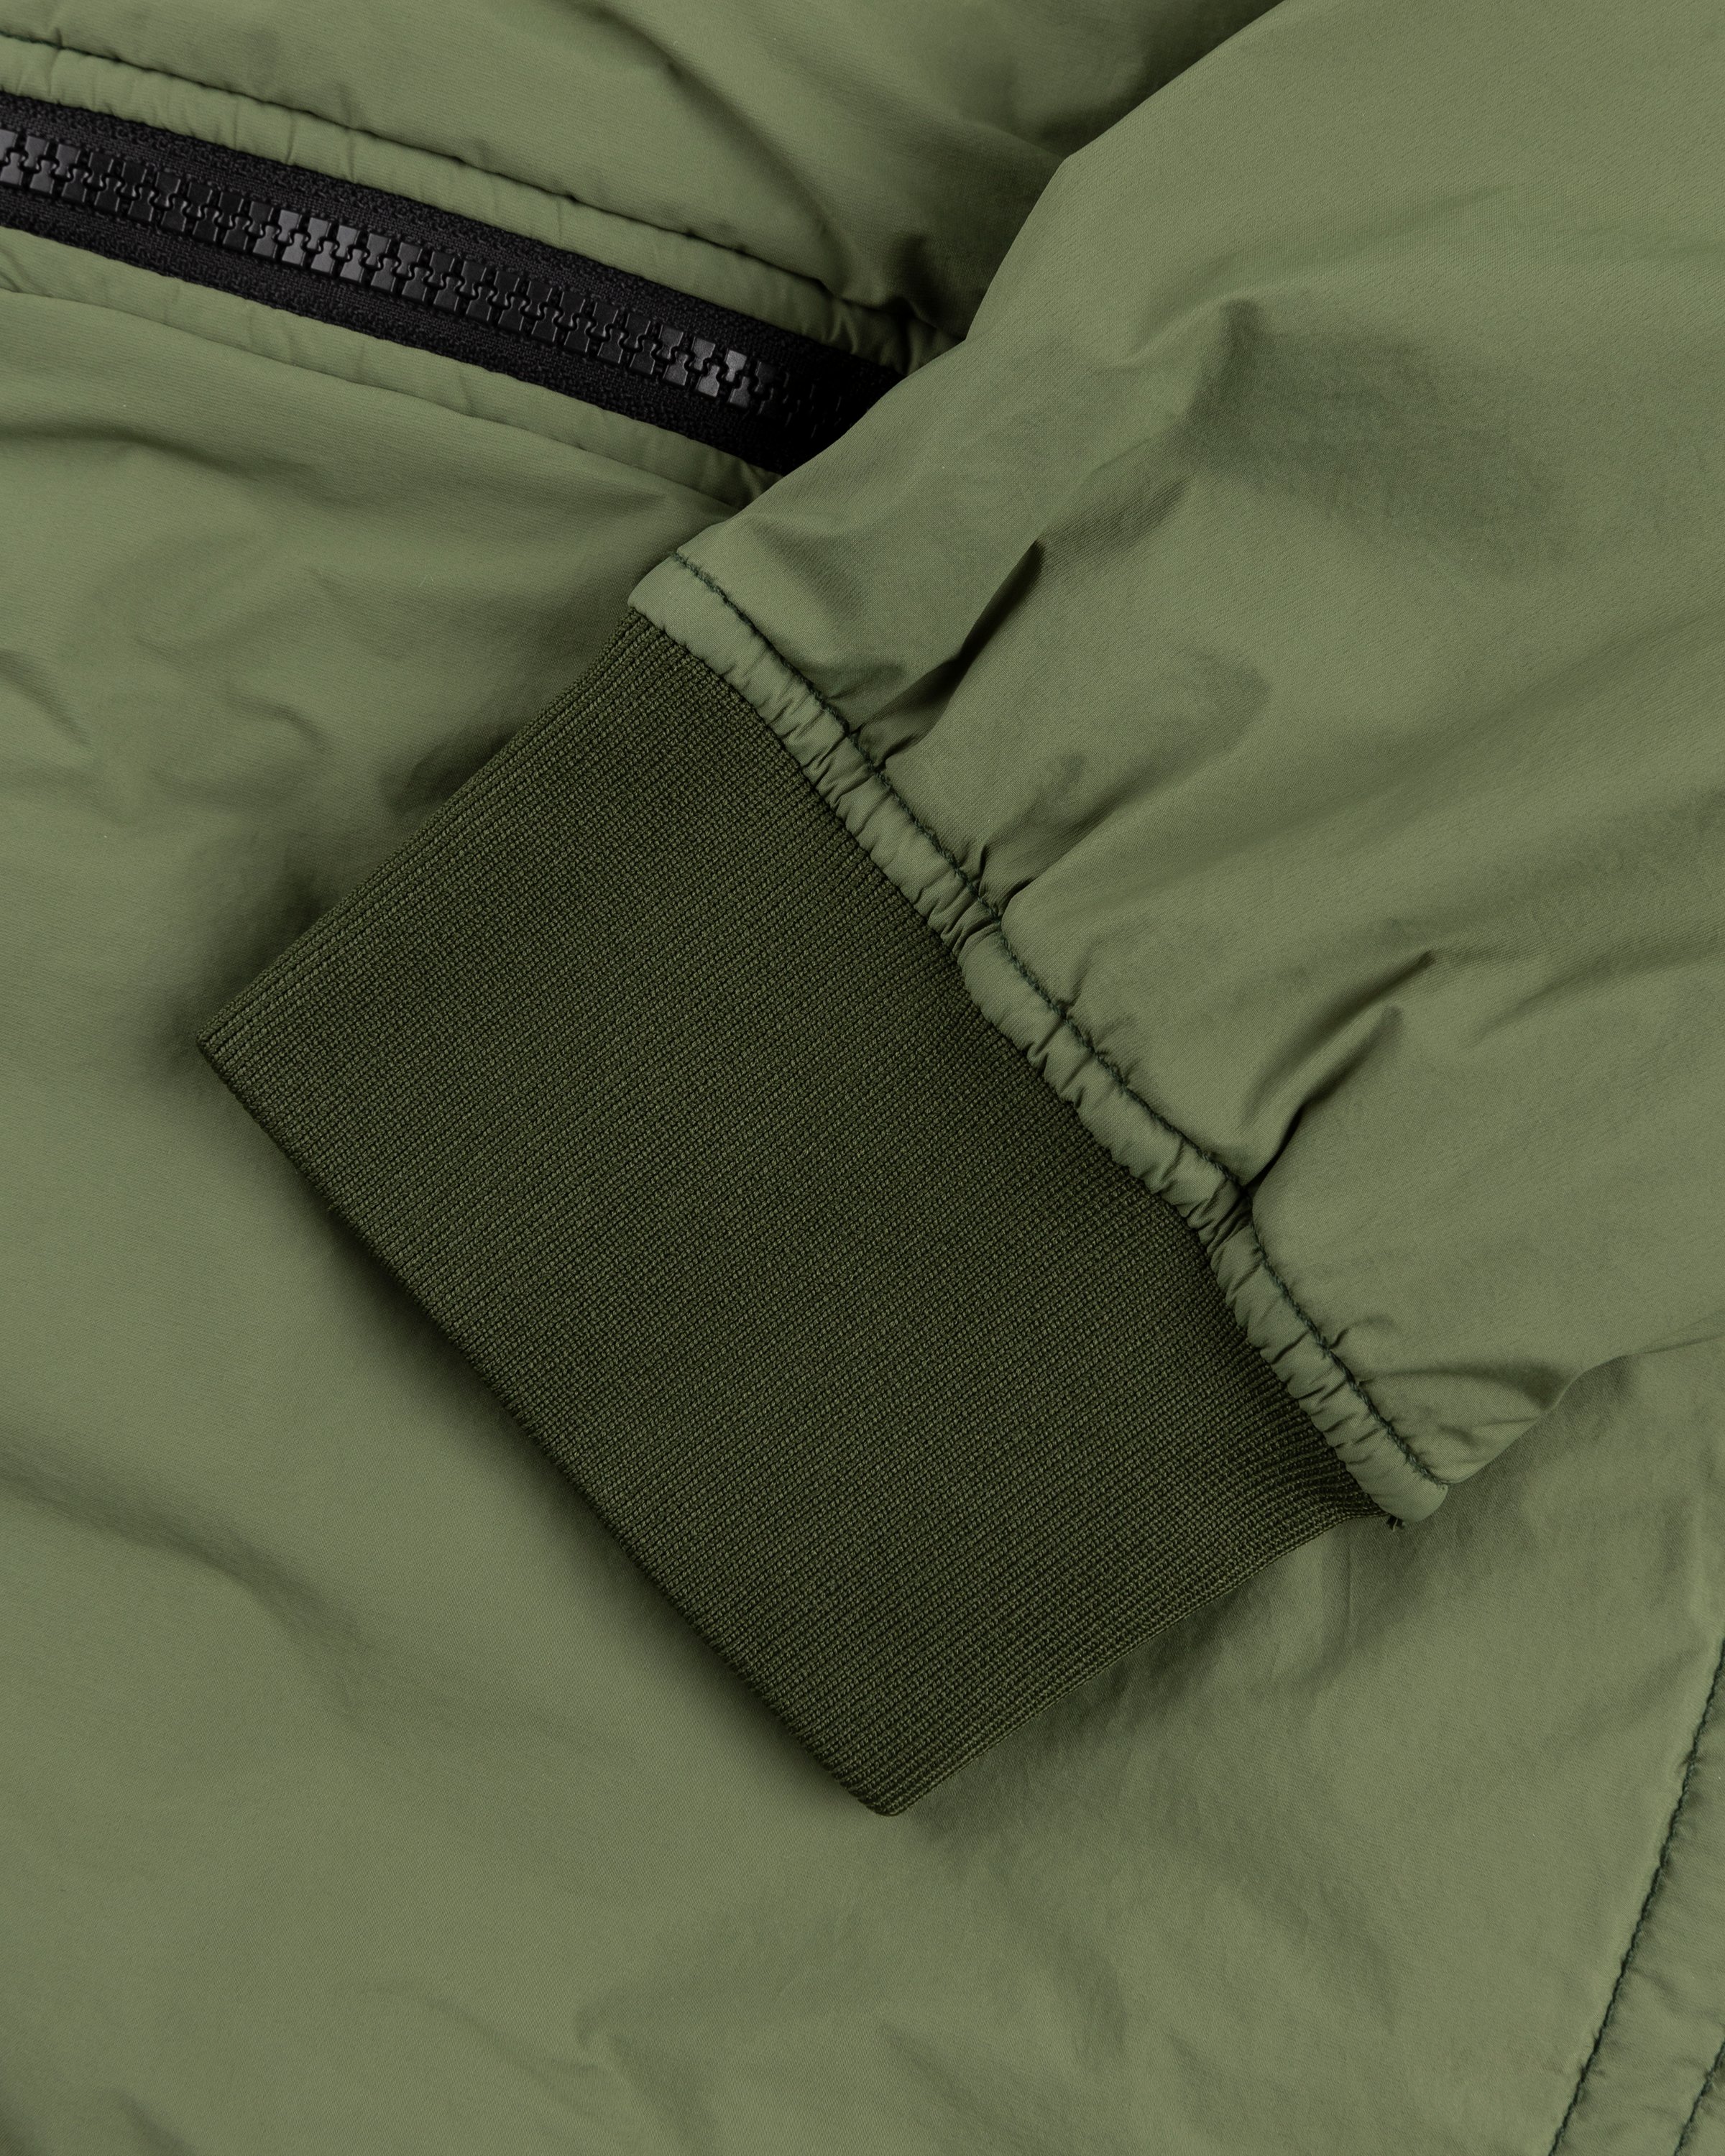 Stone Island - 41331 Nylon Bomber Jacket Olive - Clothing - Green - Image 7